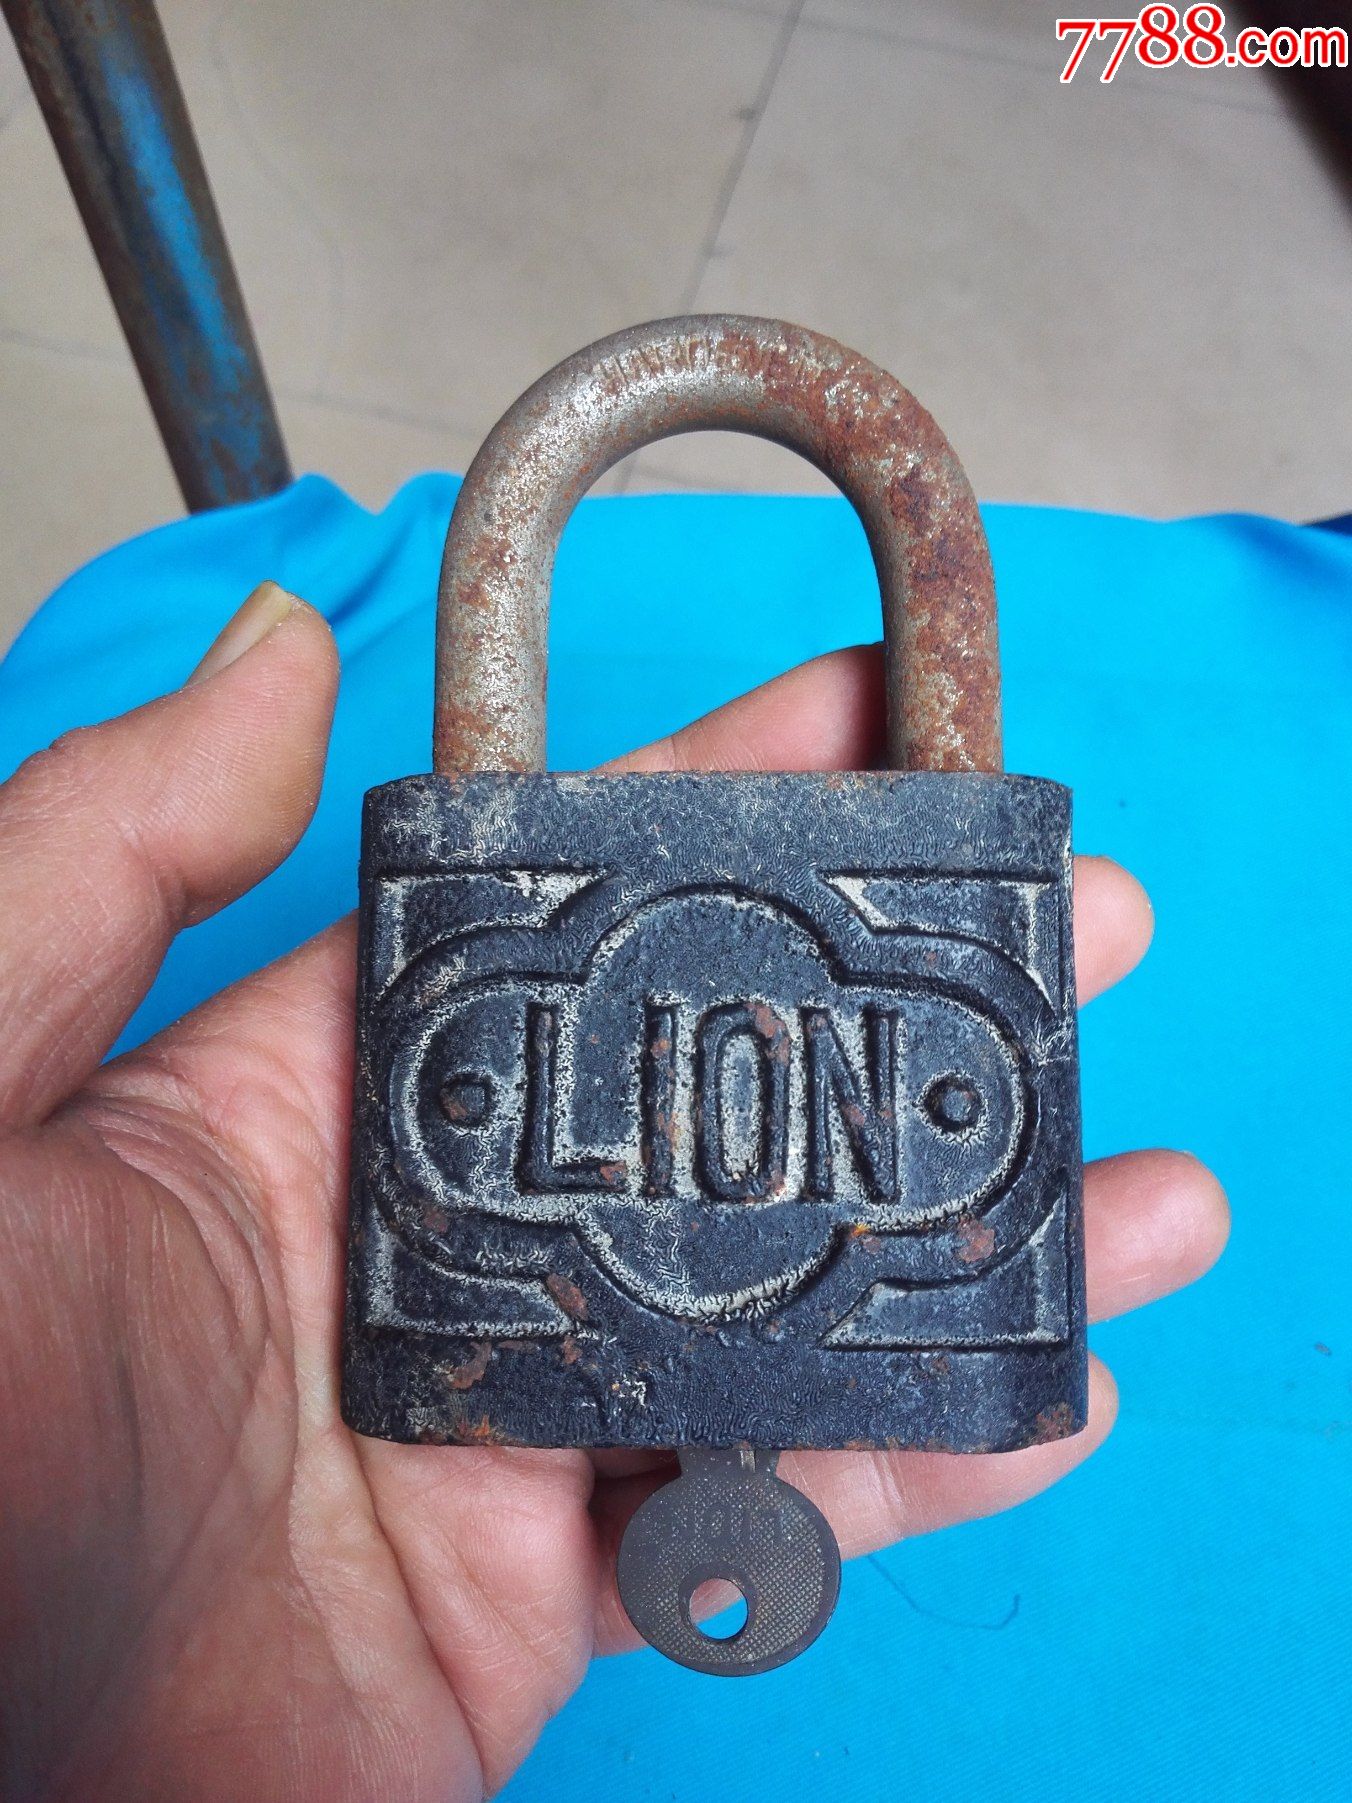 lion大铁锁